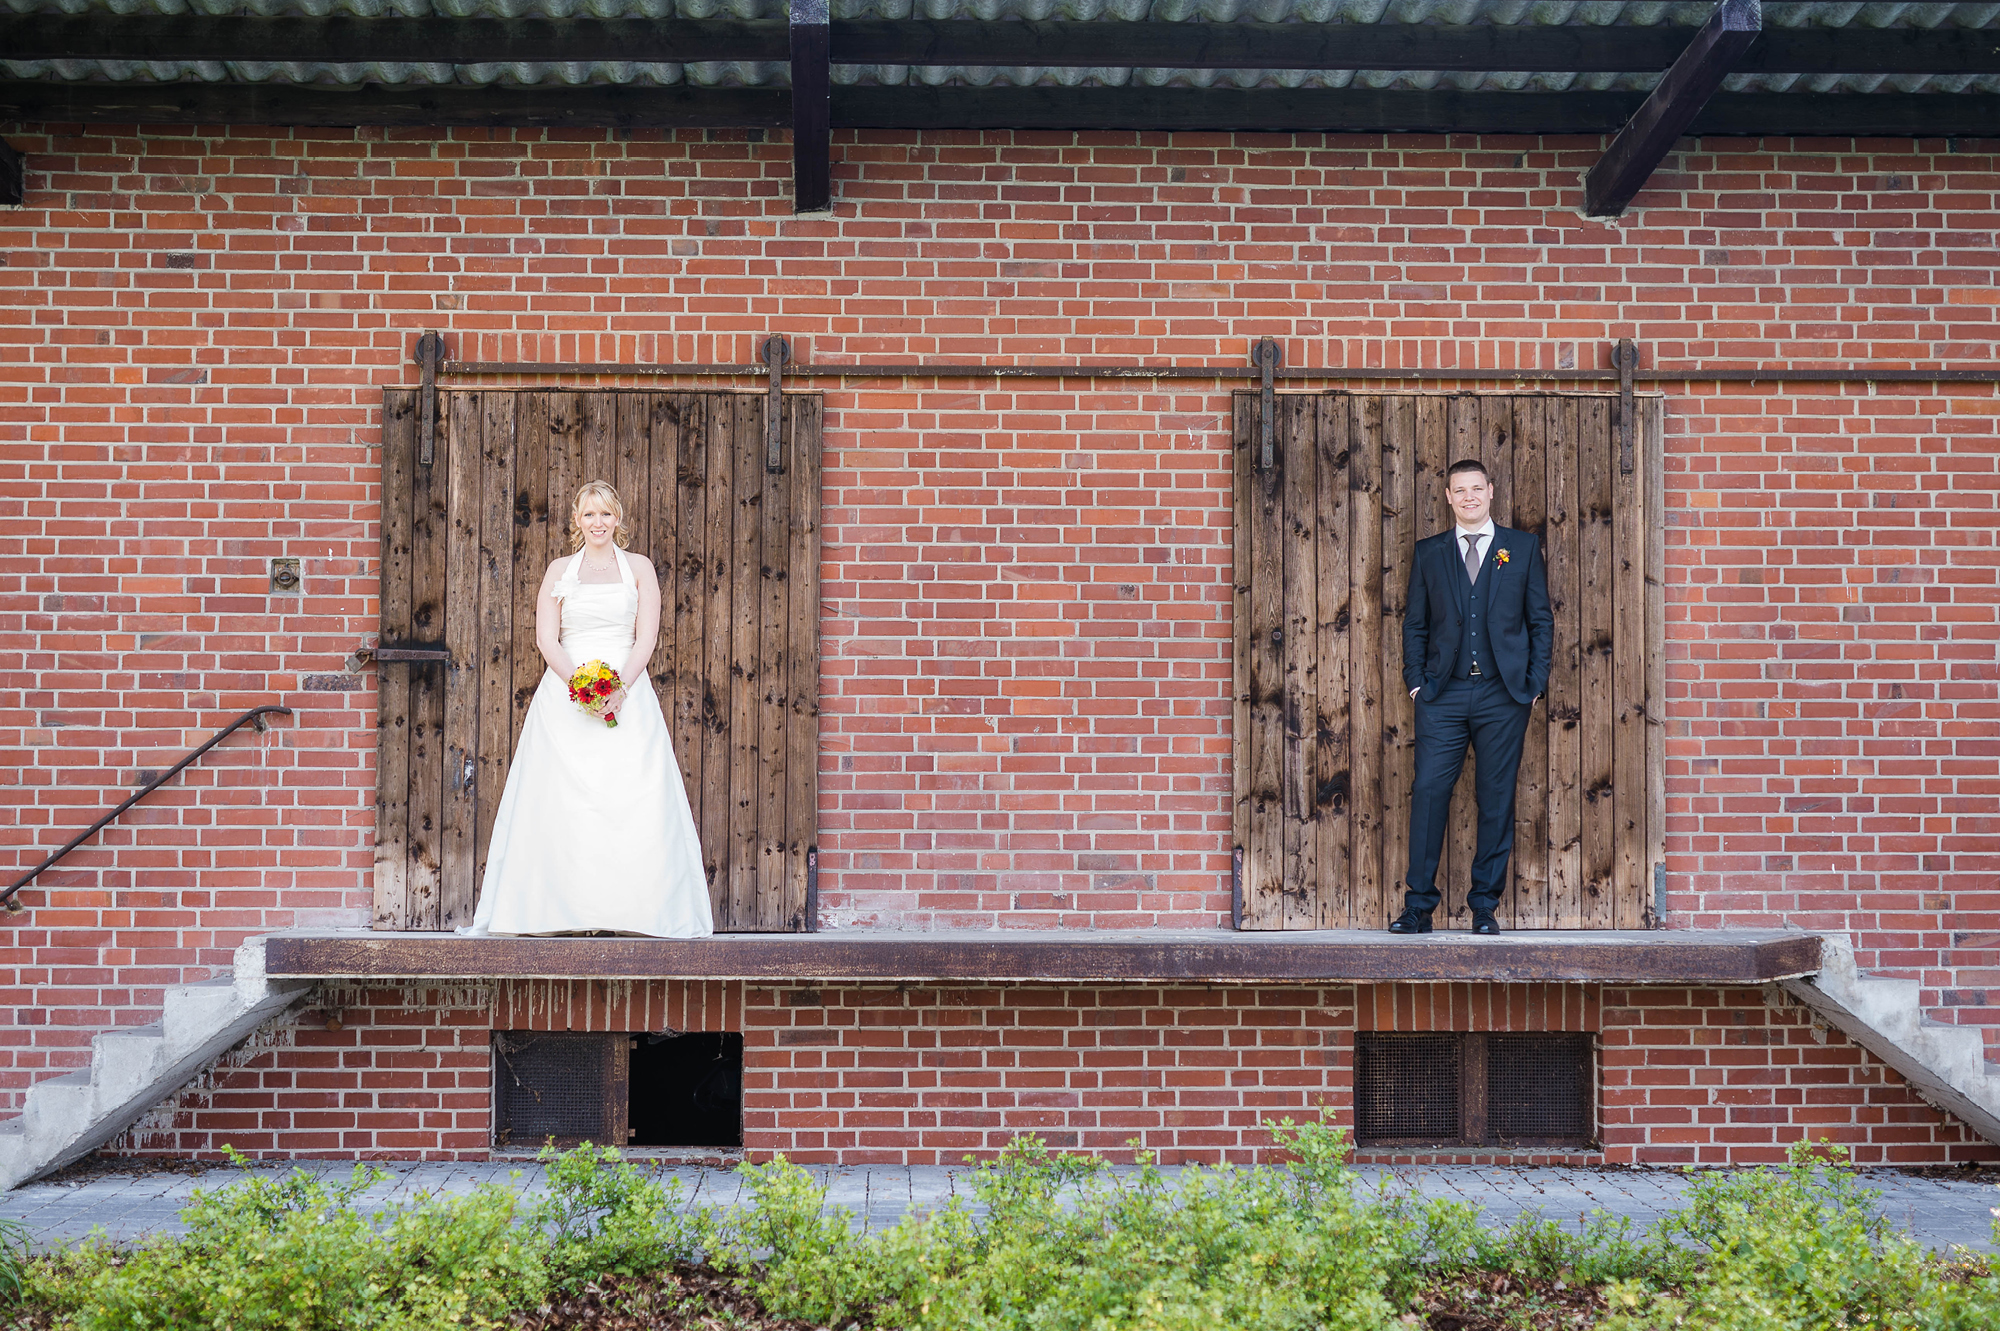 Hochzeitsfotograf-Lippstadt-Hochzeitsreportage-Rittergut_20.jpg